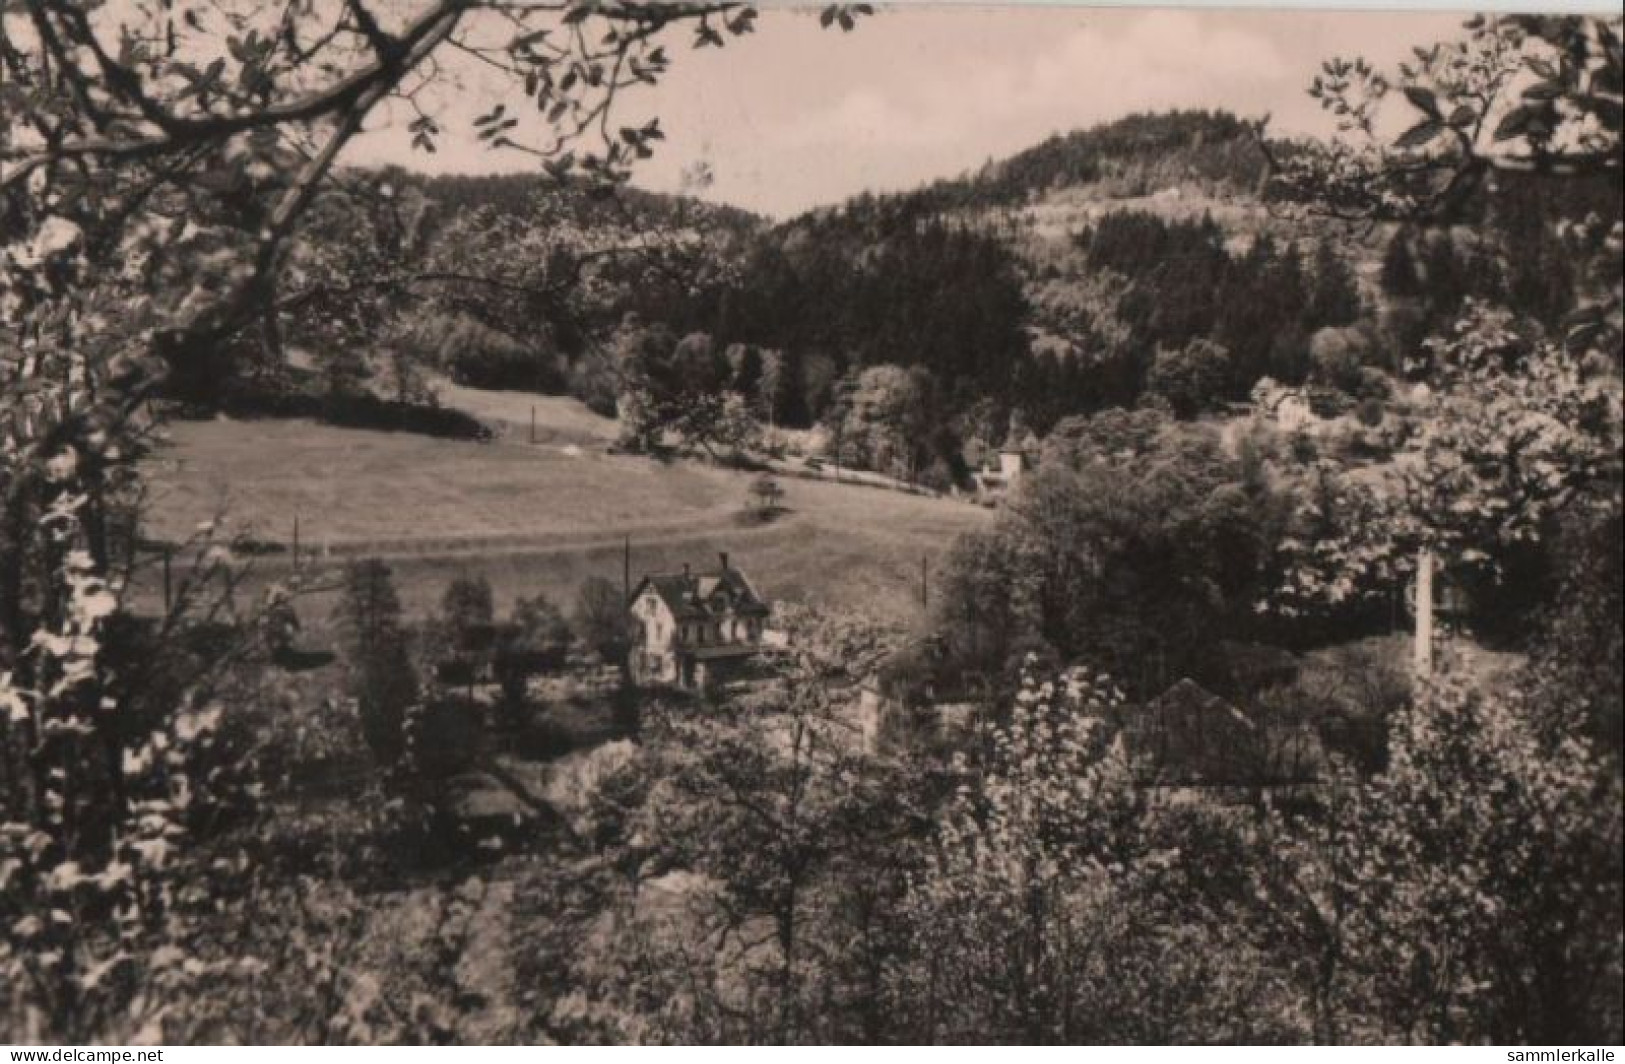 87575 - Pöhl-Jocketa - Barthmühle - 1968 - Pöhl